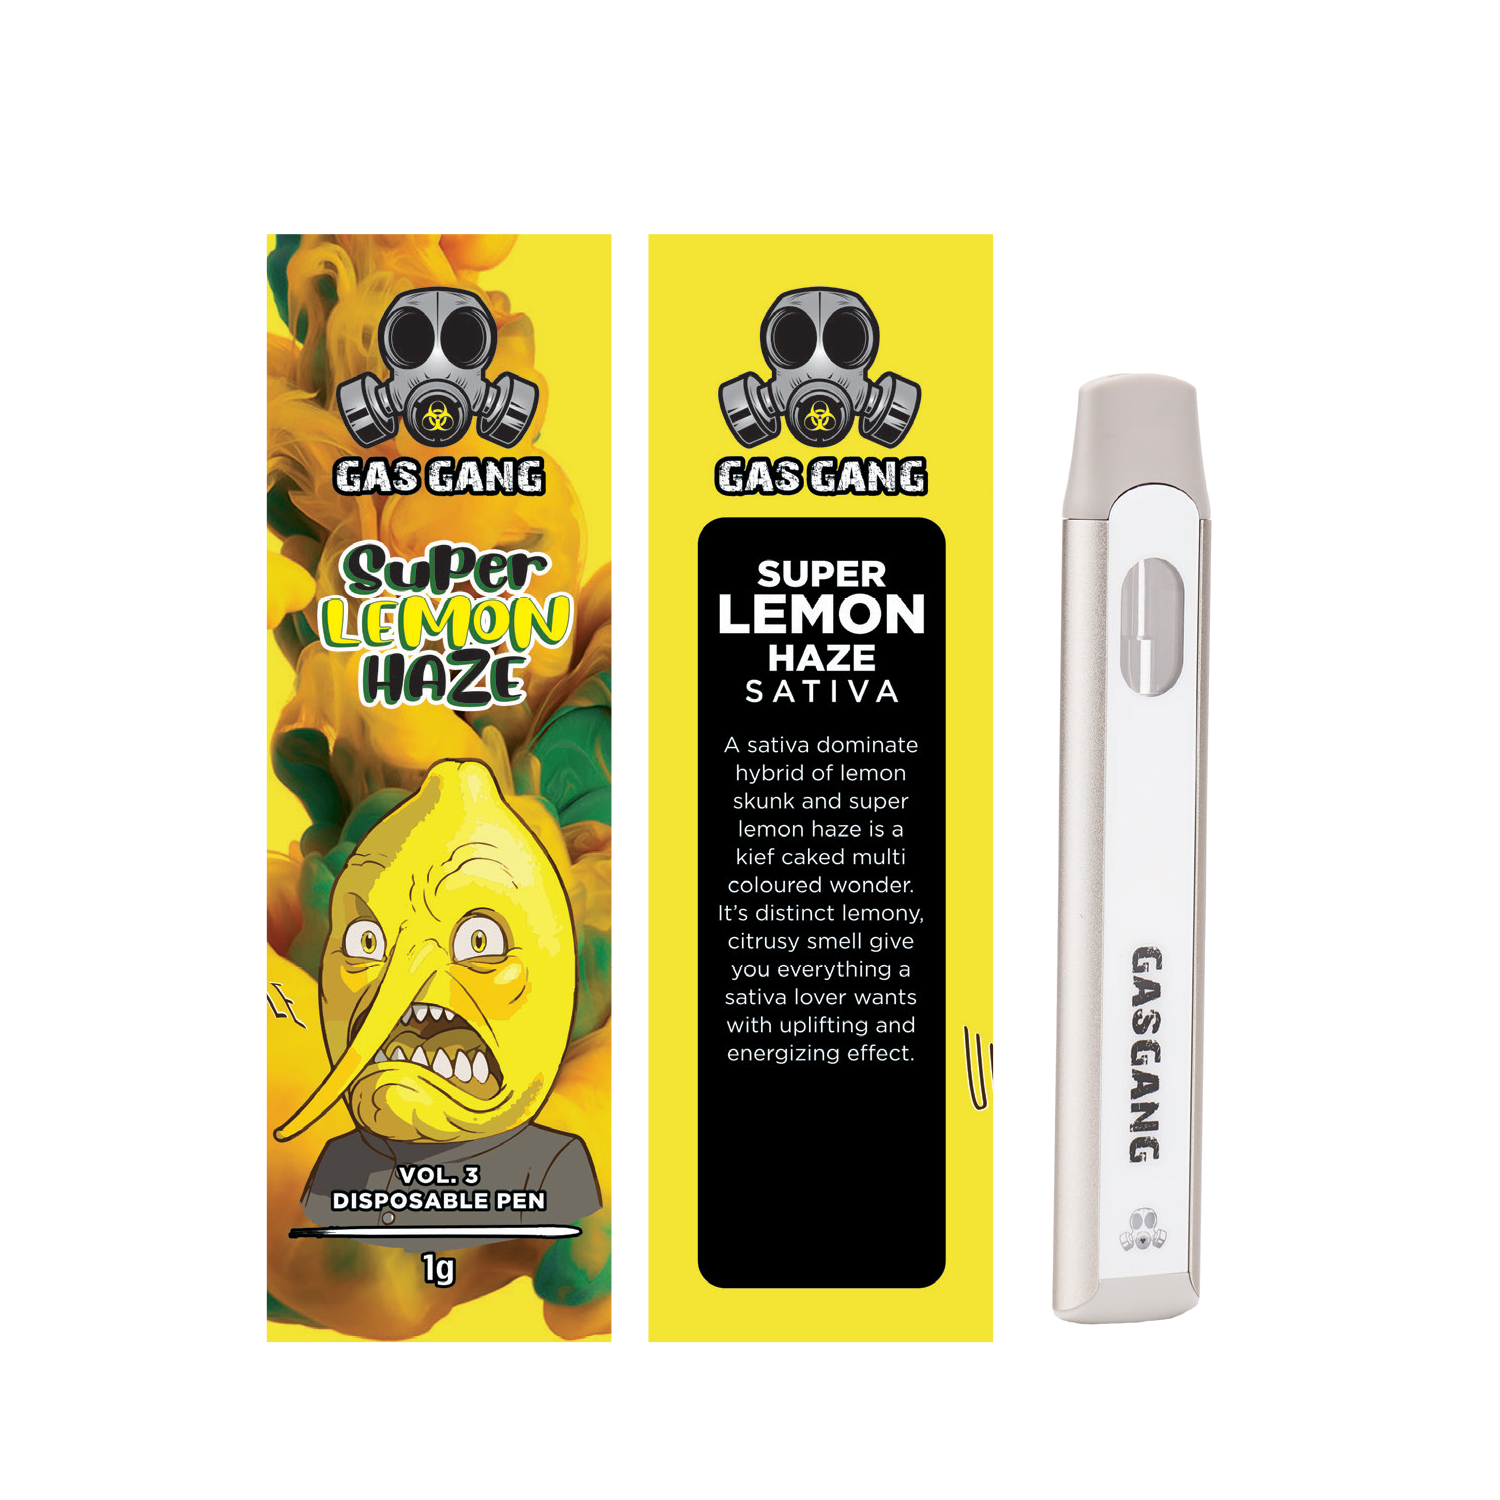 Buy Gas Gang - Super Lemon Haze Disposable Pen at Wccannabis Online Shop